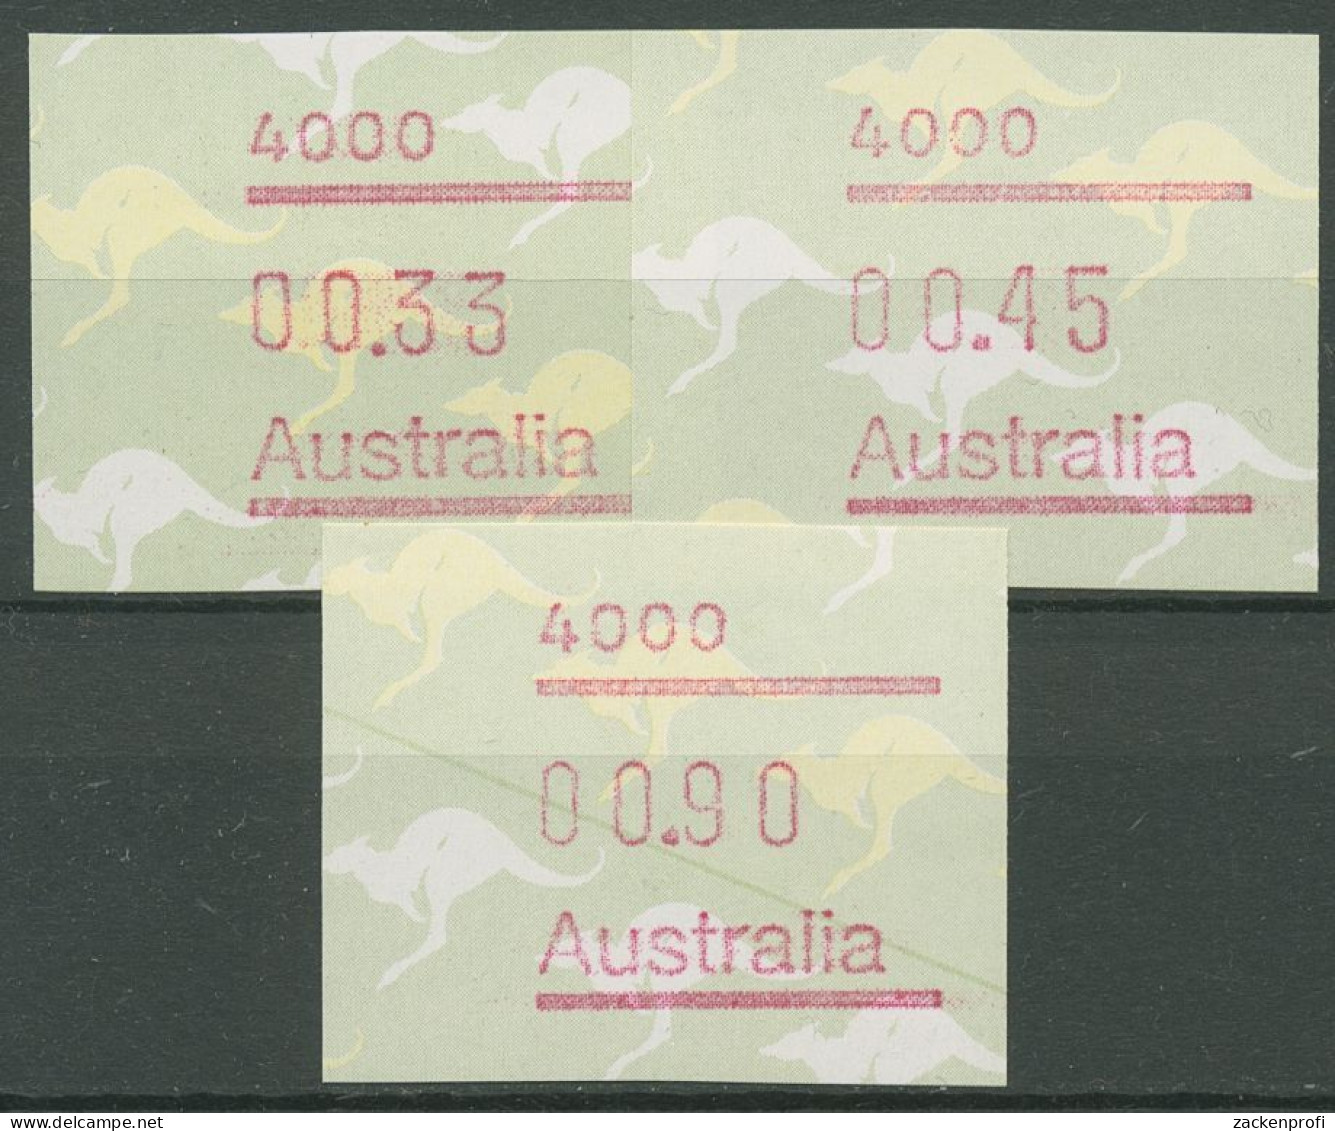 Australien 1985 Känguruh Tastensatz Automatenmarke 4 S1, 4000 Postfrisch - Machine Labels [ATM]